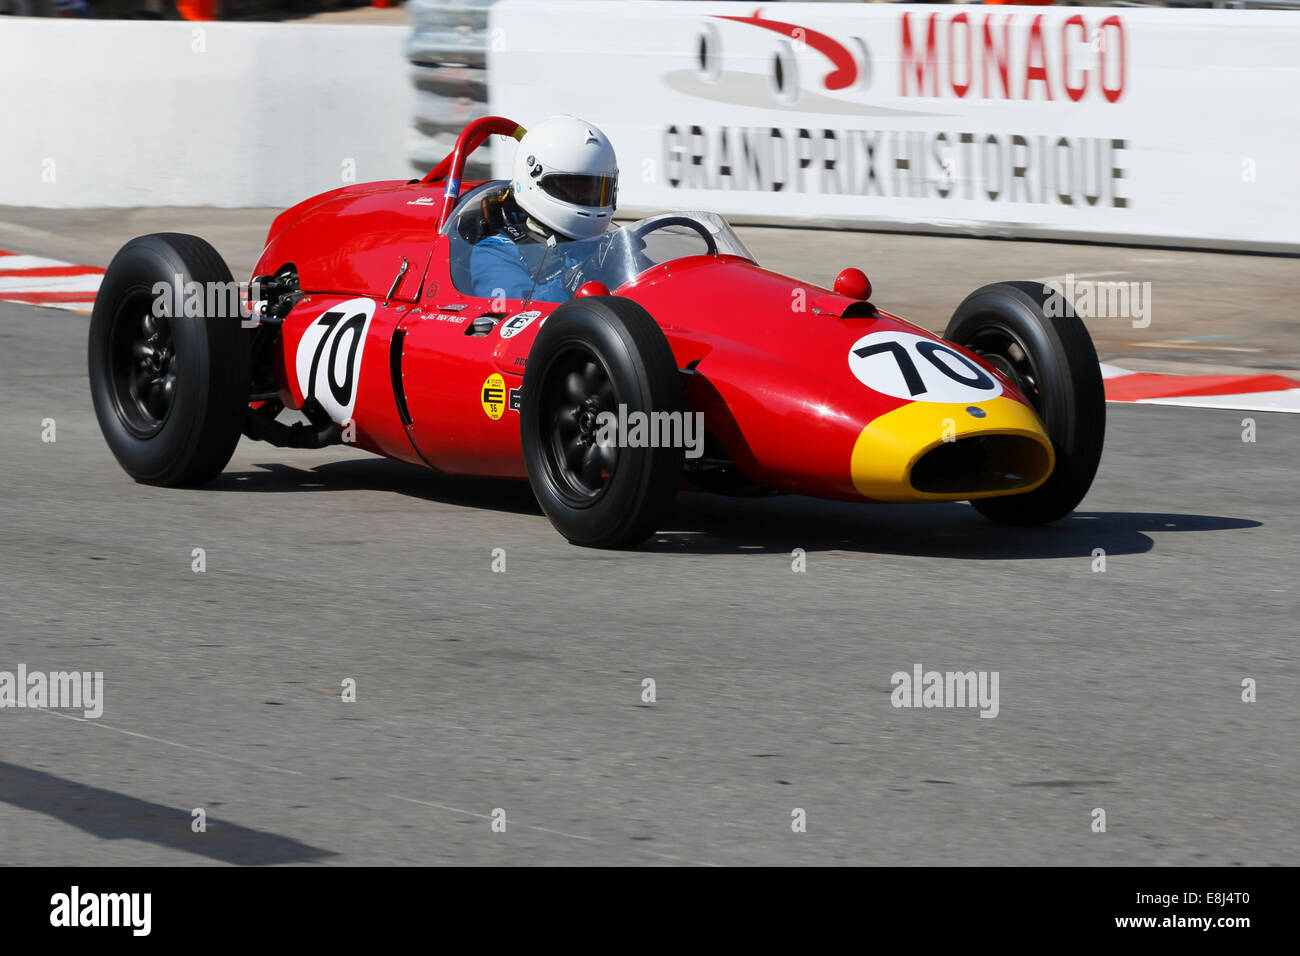 Voiture de course de l'après-guerre Cooper T51 Climax, construit en 1959, Jean-Georges van Praet, 9e Grand Prix de Monaco Historique Banque D'Images